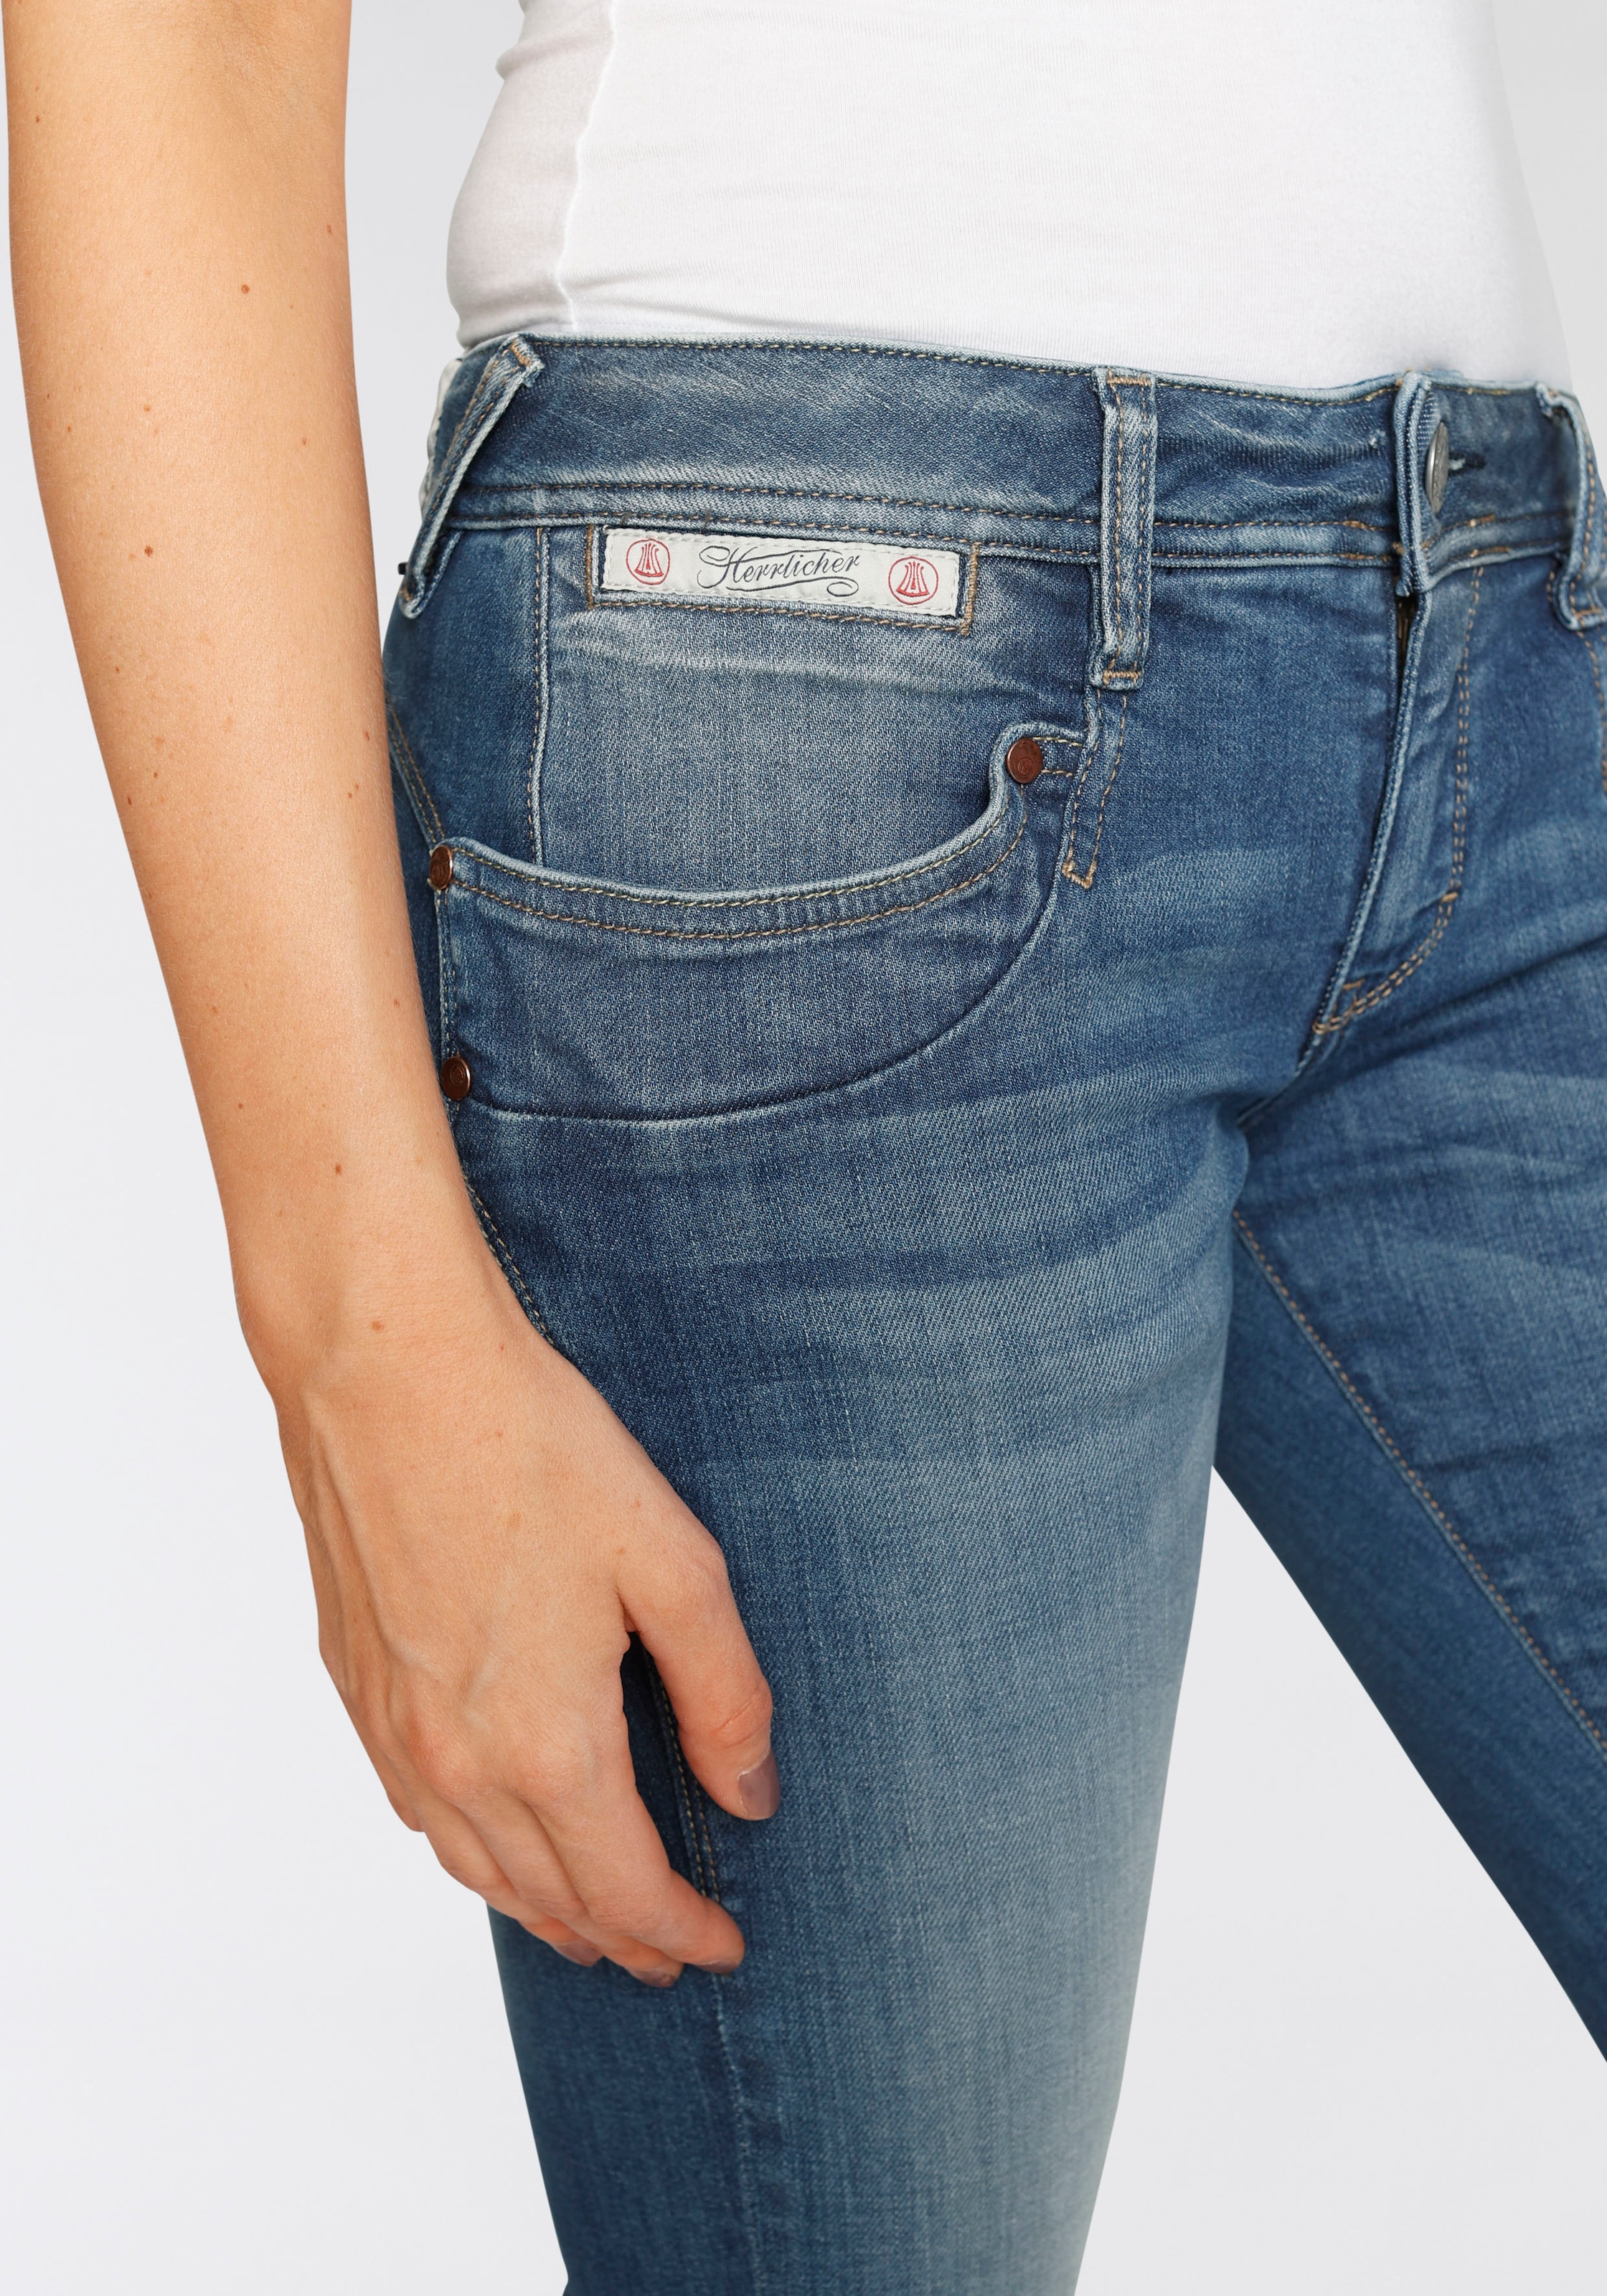 »PIPER sur Slim-fit-Jeans ORGANIC«, Herrlicher Technology Découvrir umweltfreundlich SLIM dank Kitotex